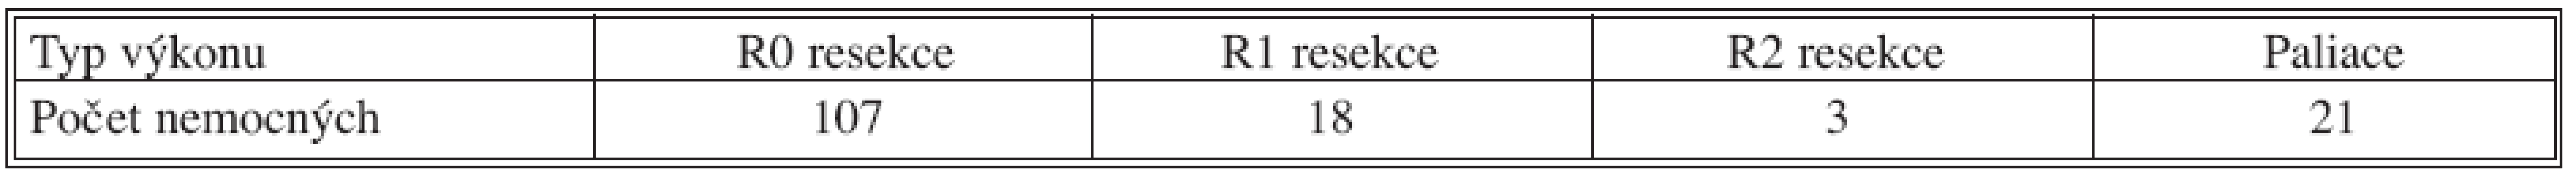 Rozdělení souborů nemocných podle typů radikality resekce
Tab. 3. The patient group distribution according to the resection radicality type